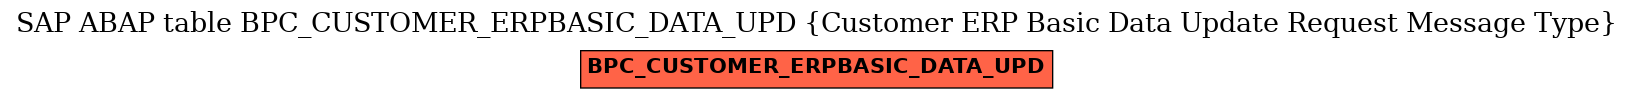 E-R Diagram for table BPC_CUSTOMER_ERPBASIC_DATA_UPD (Customer ERP Basic Data Update Request Message Type)